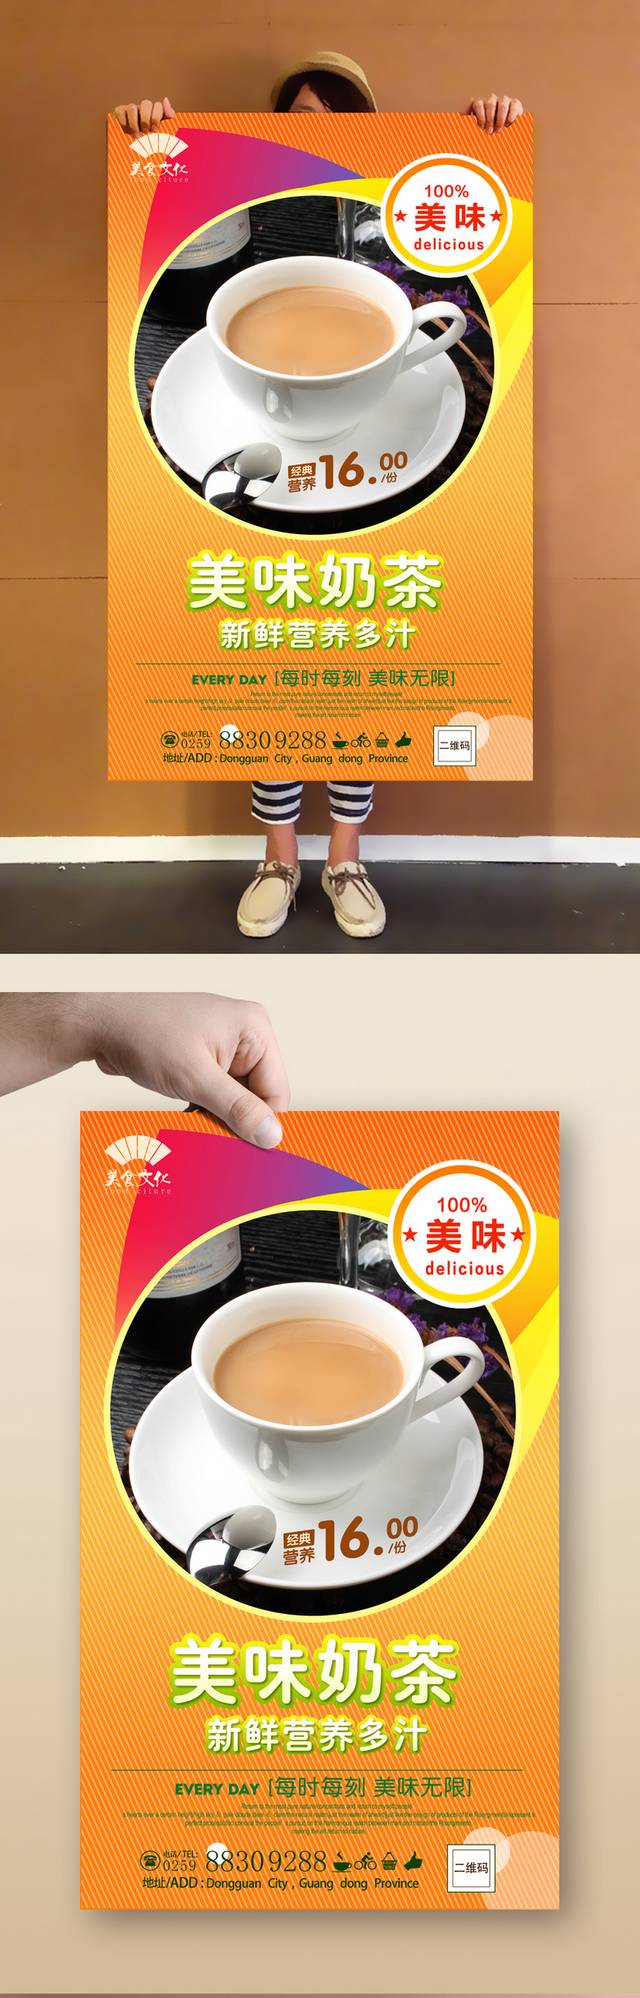 高清香浓奶茶店宣传海报设计下载